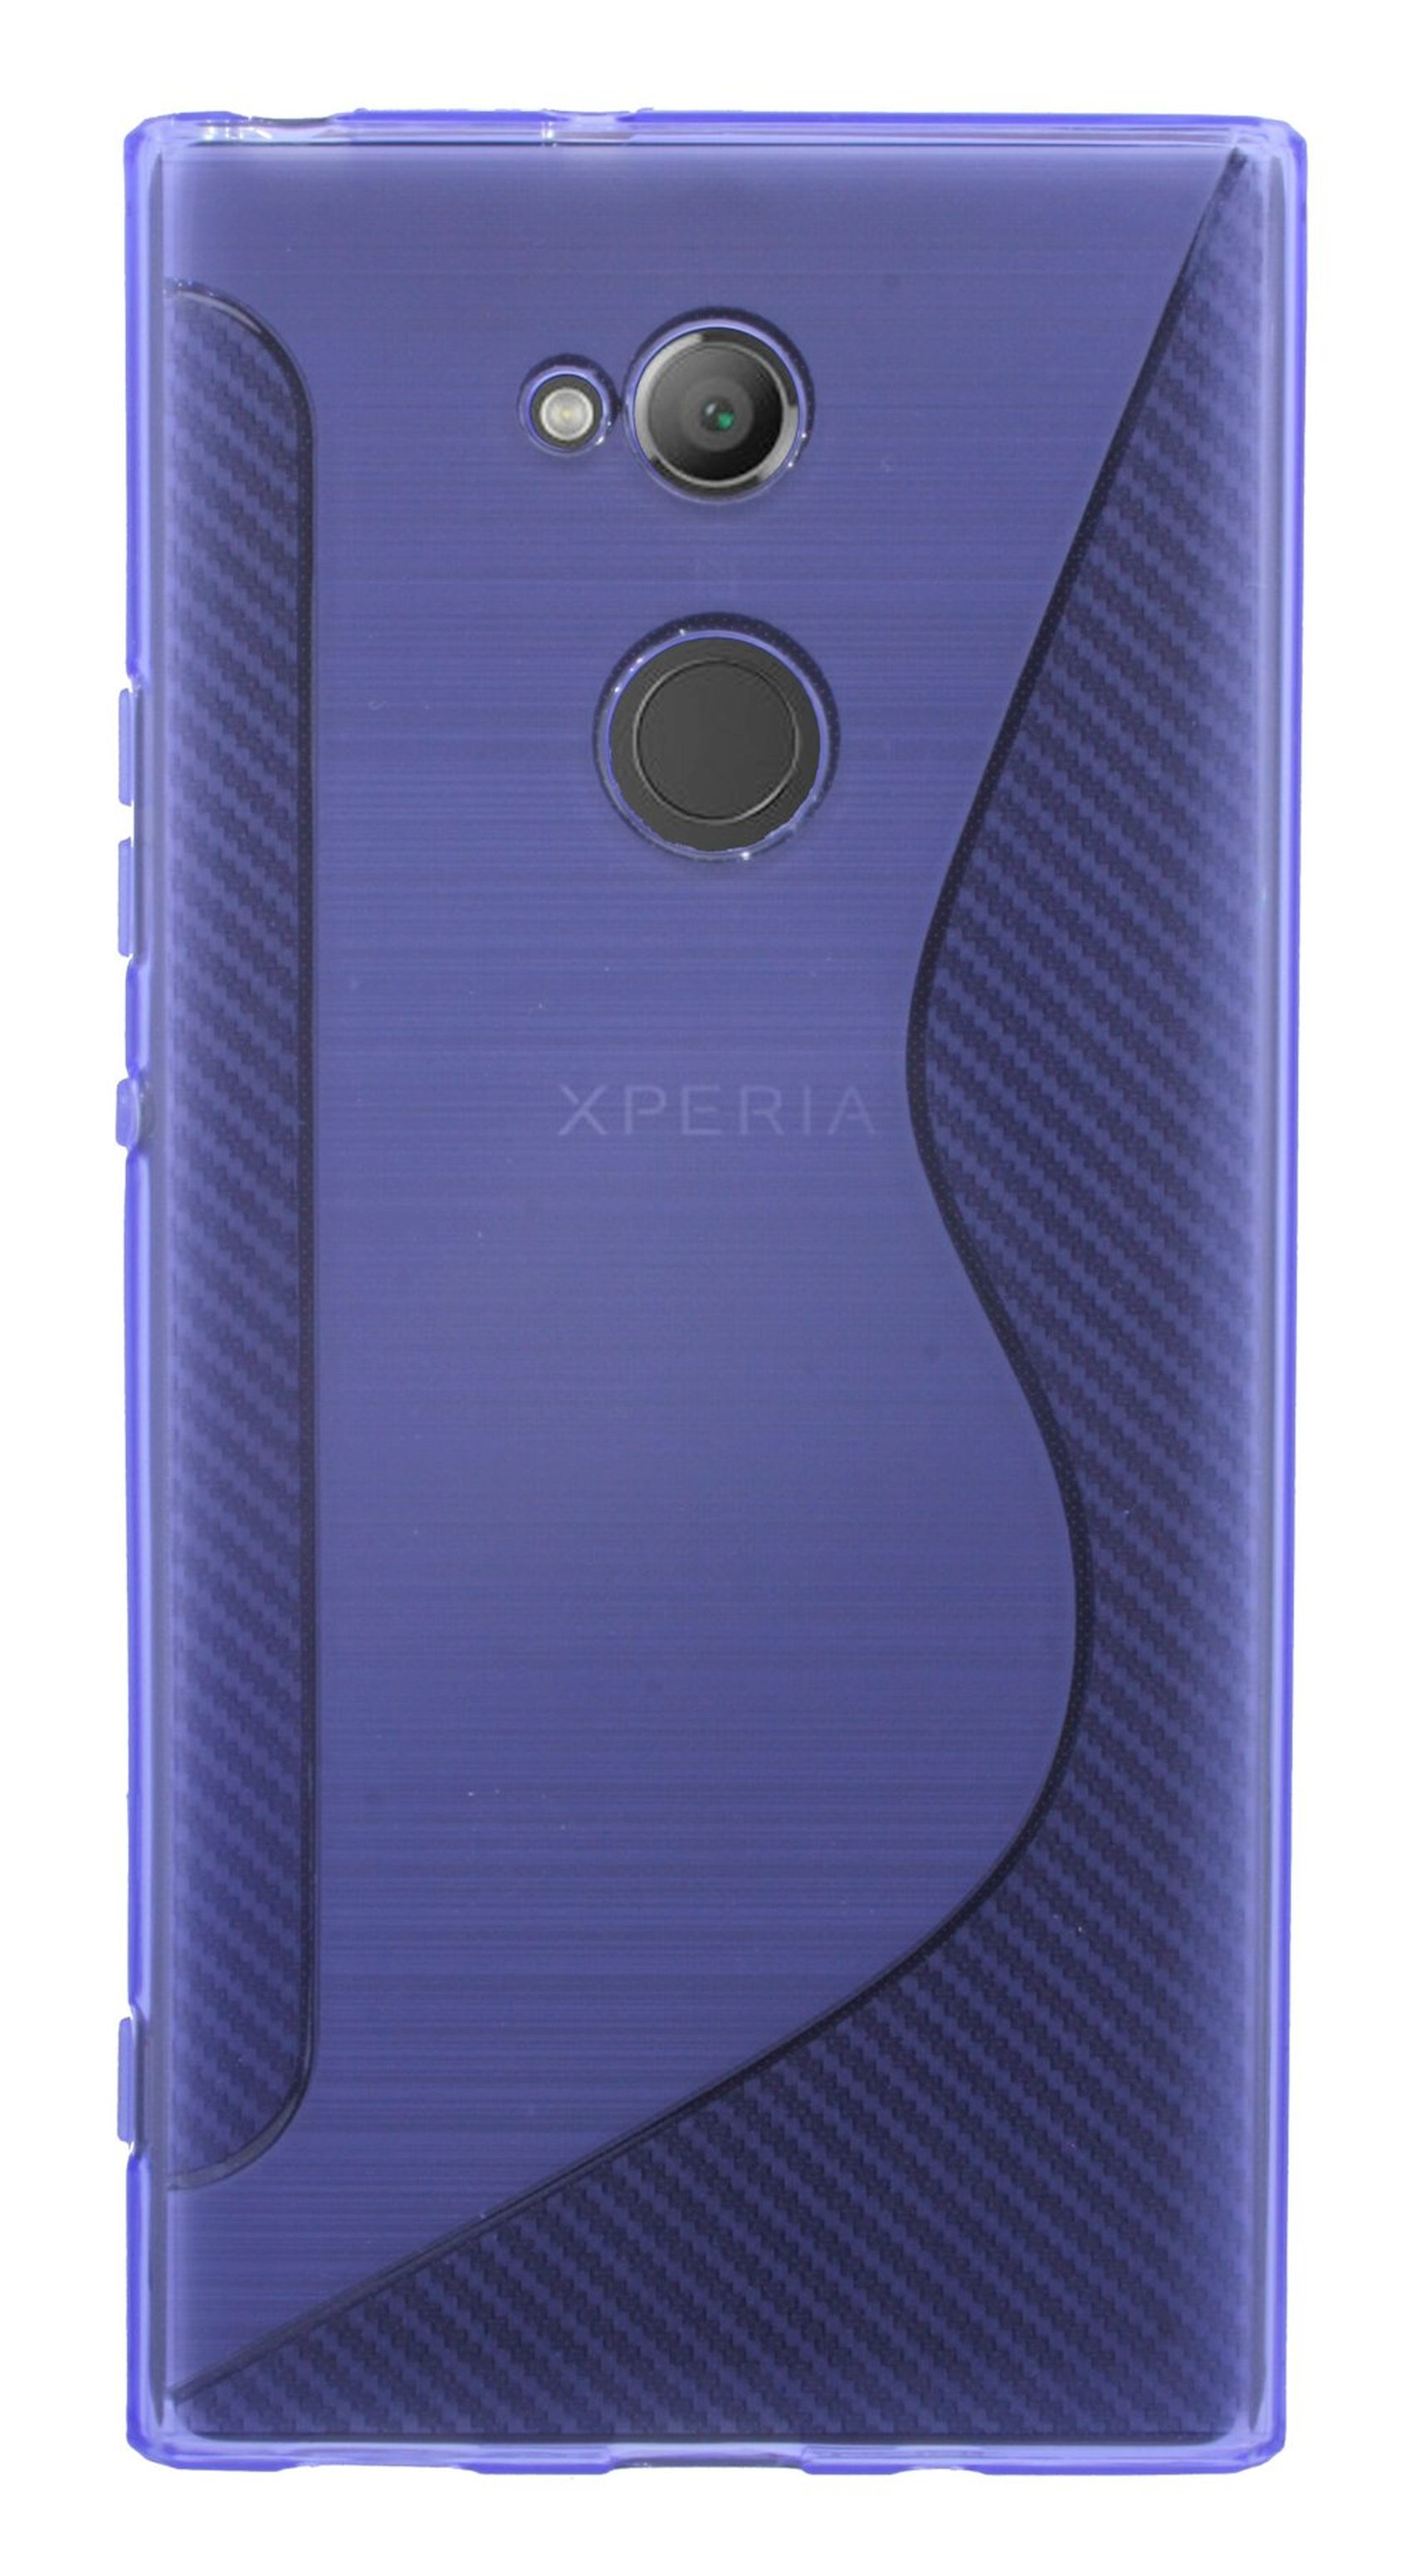 COFI S-Line Cover, Bumper, Sony, Violett Xperia XA2